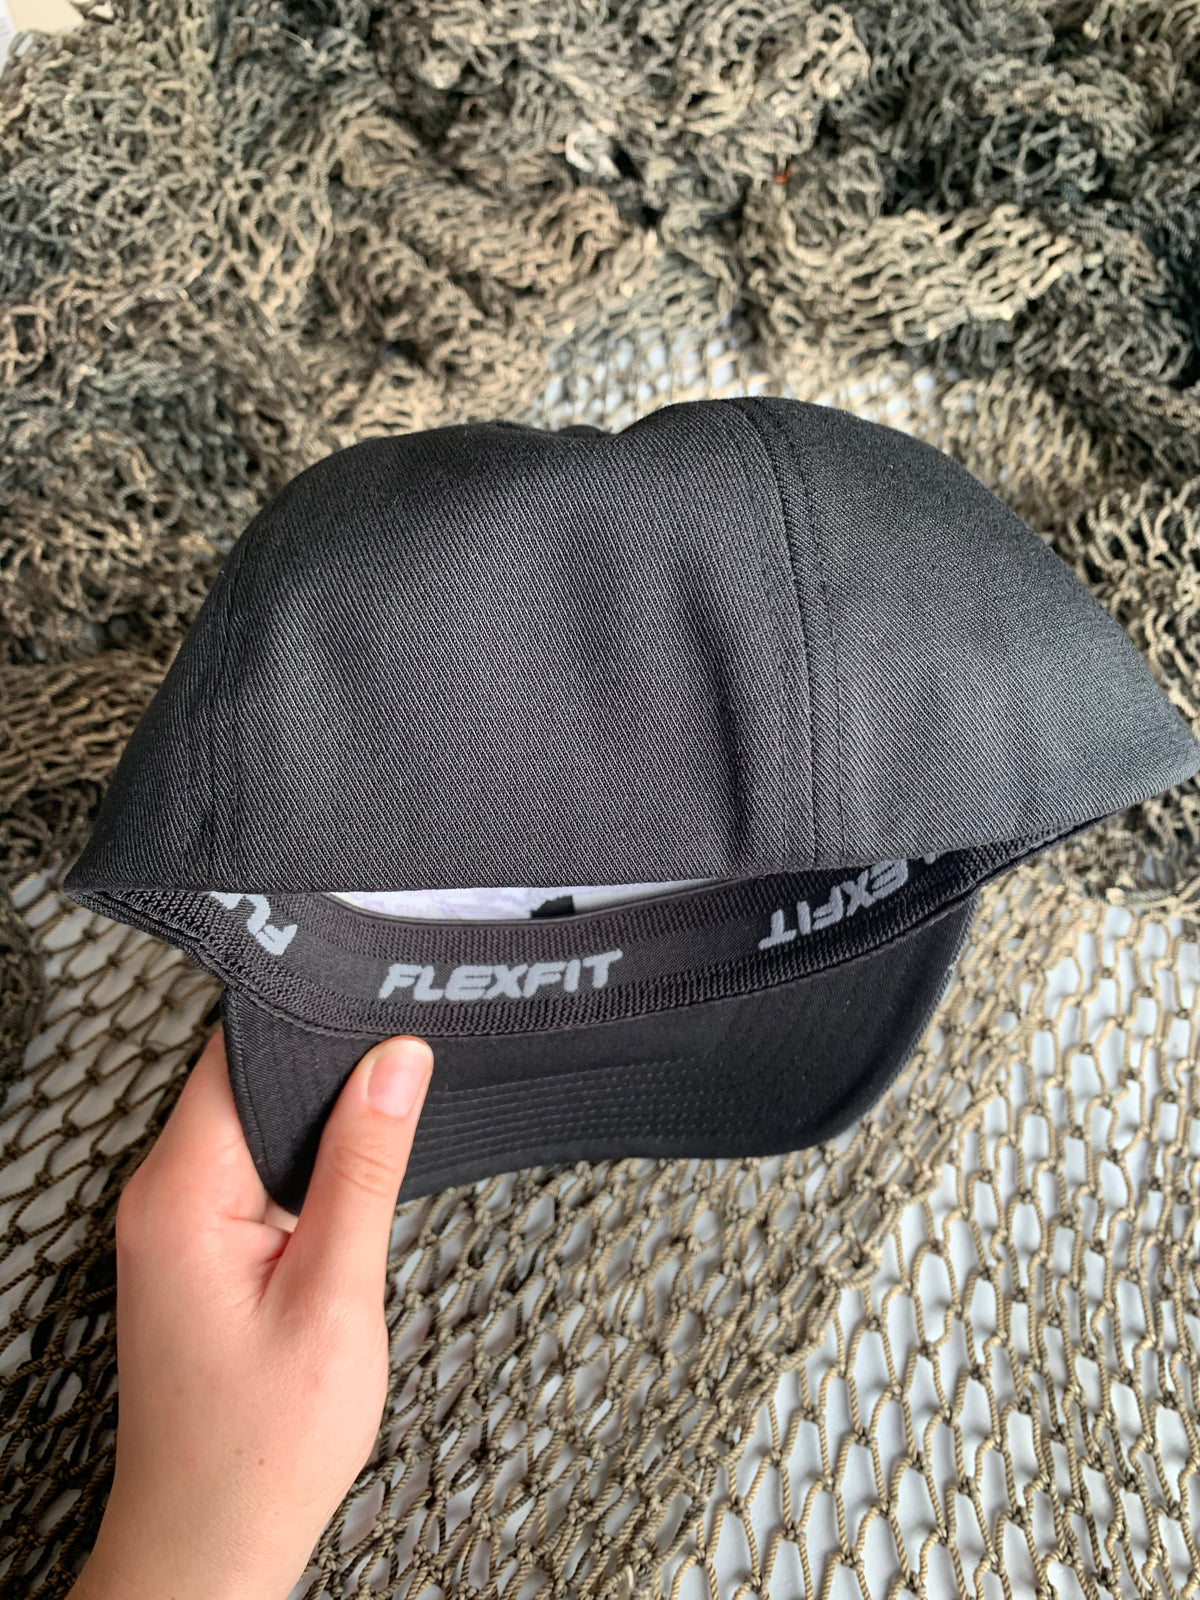 WILD Flexfit Hat